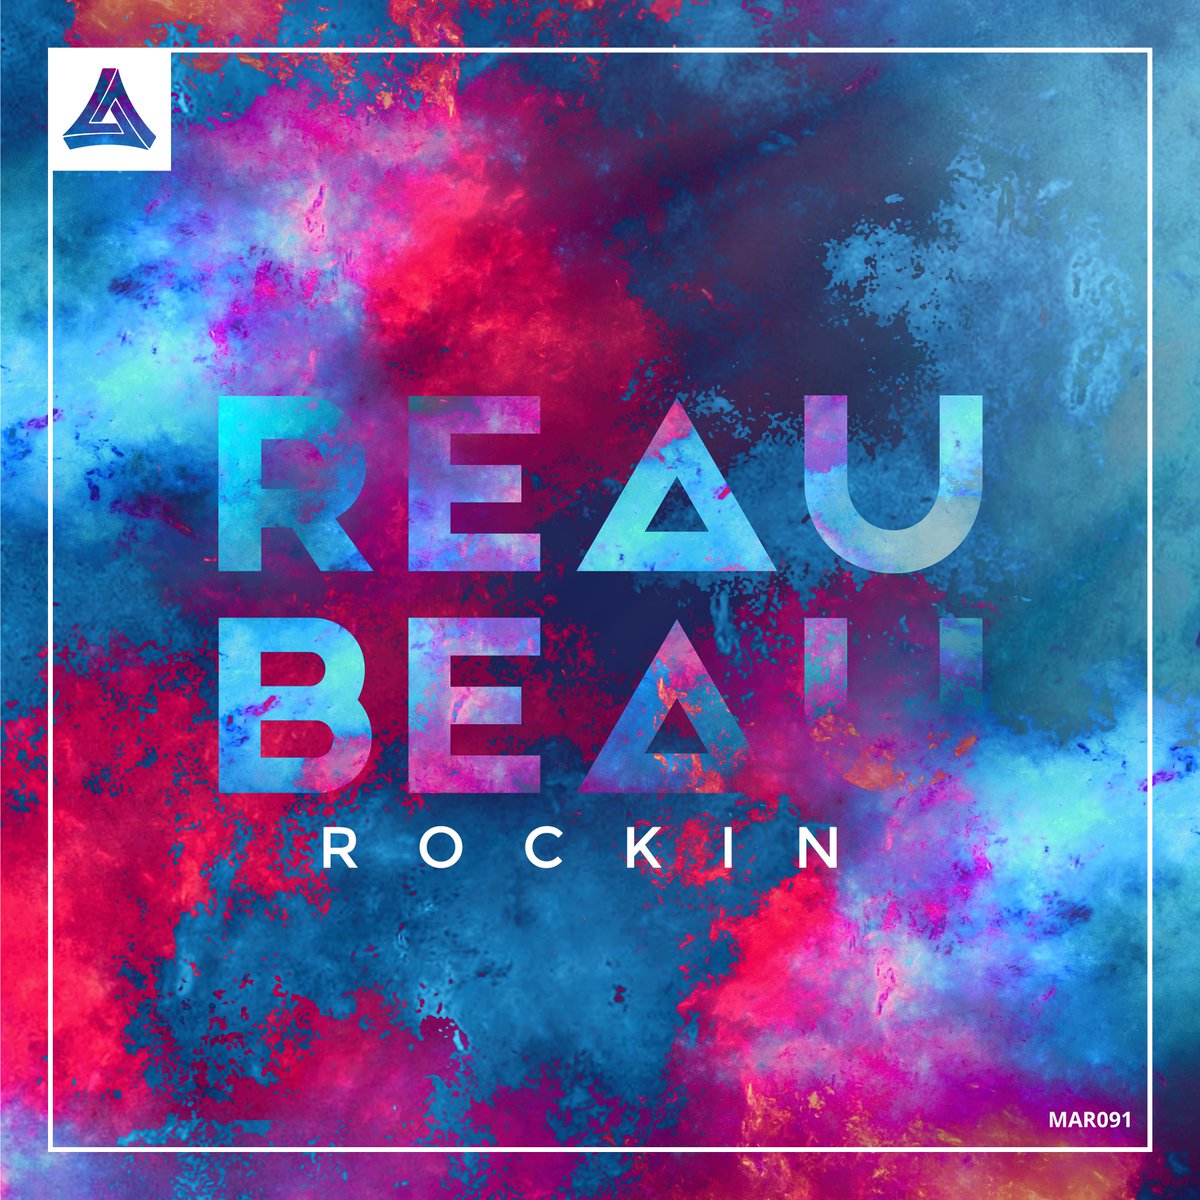 Album artwork. Reaubeau - Rockin